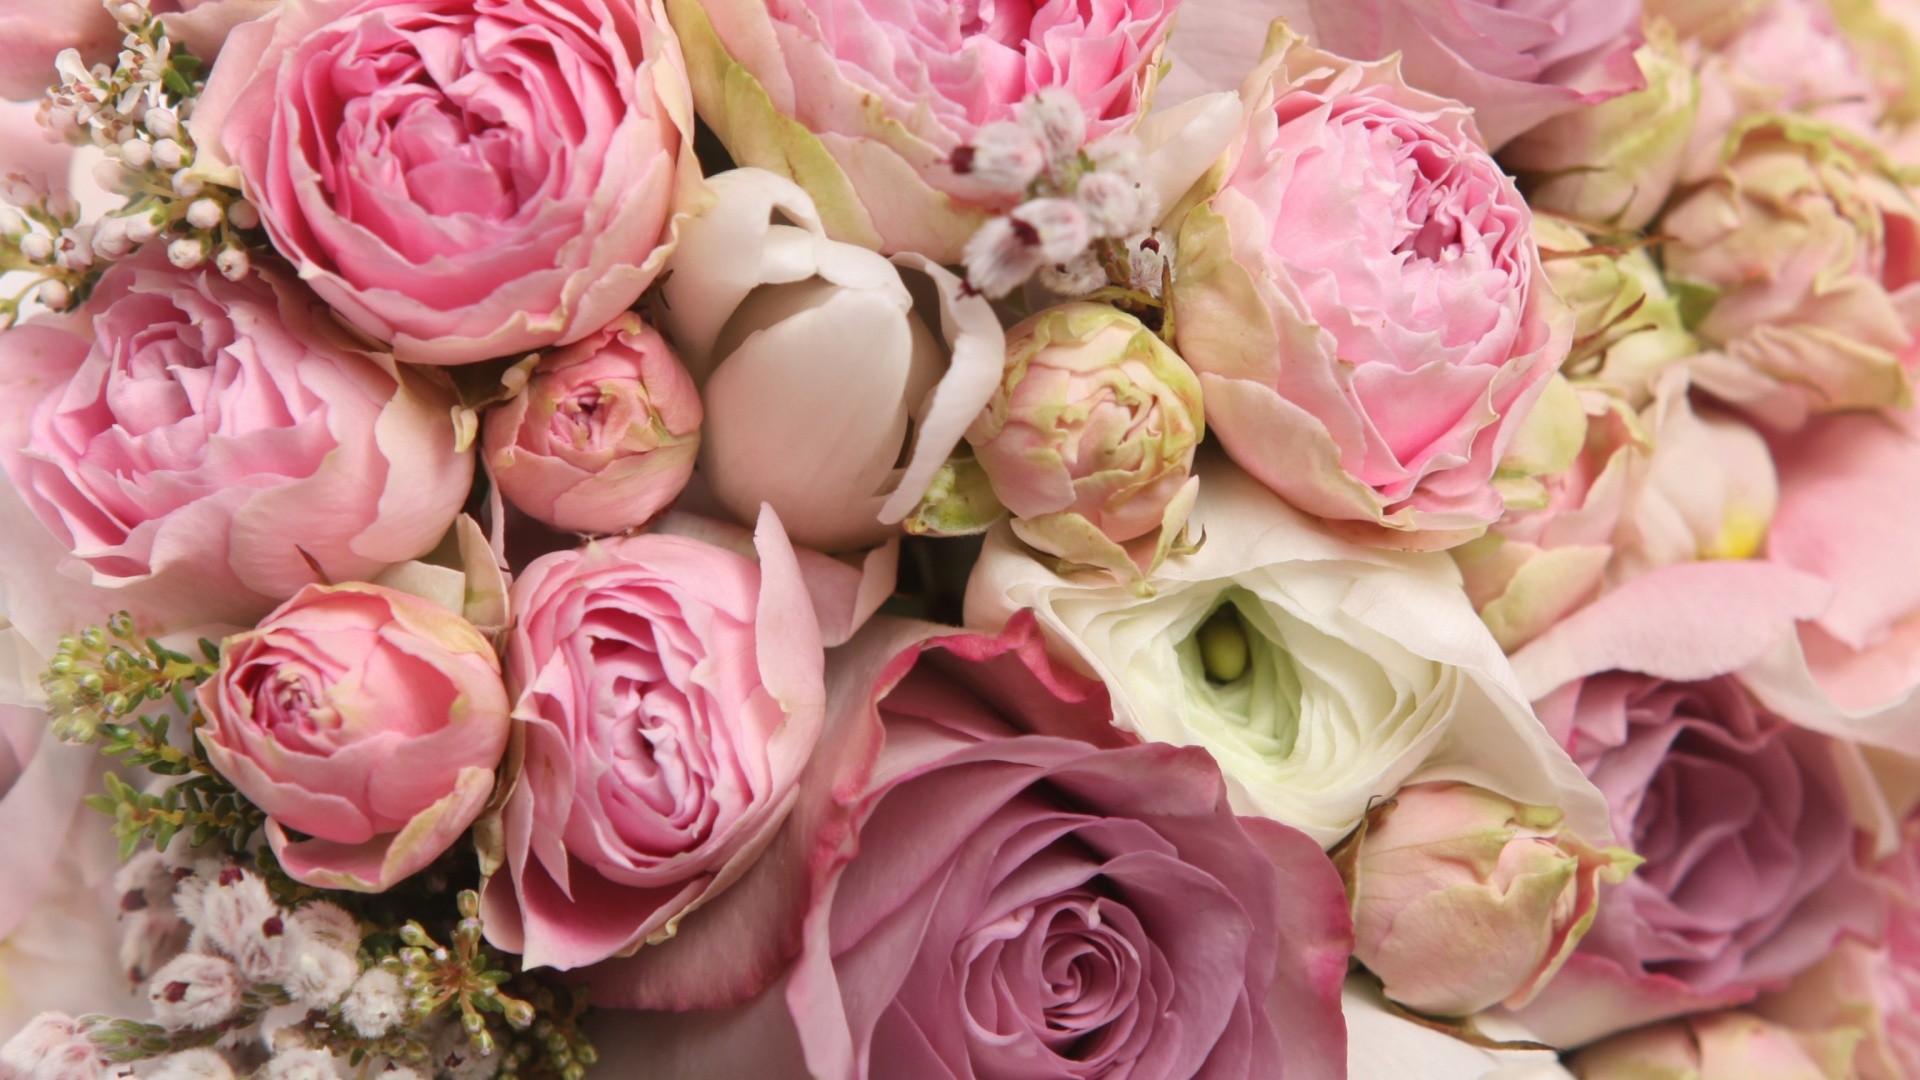 Peonies Wallpaper Screensaver - Rose Beautiful Rose Wallpaper Flowers - HD Wallpaper 